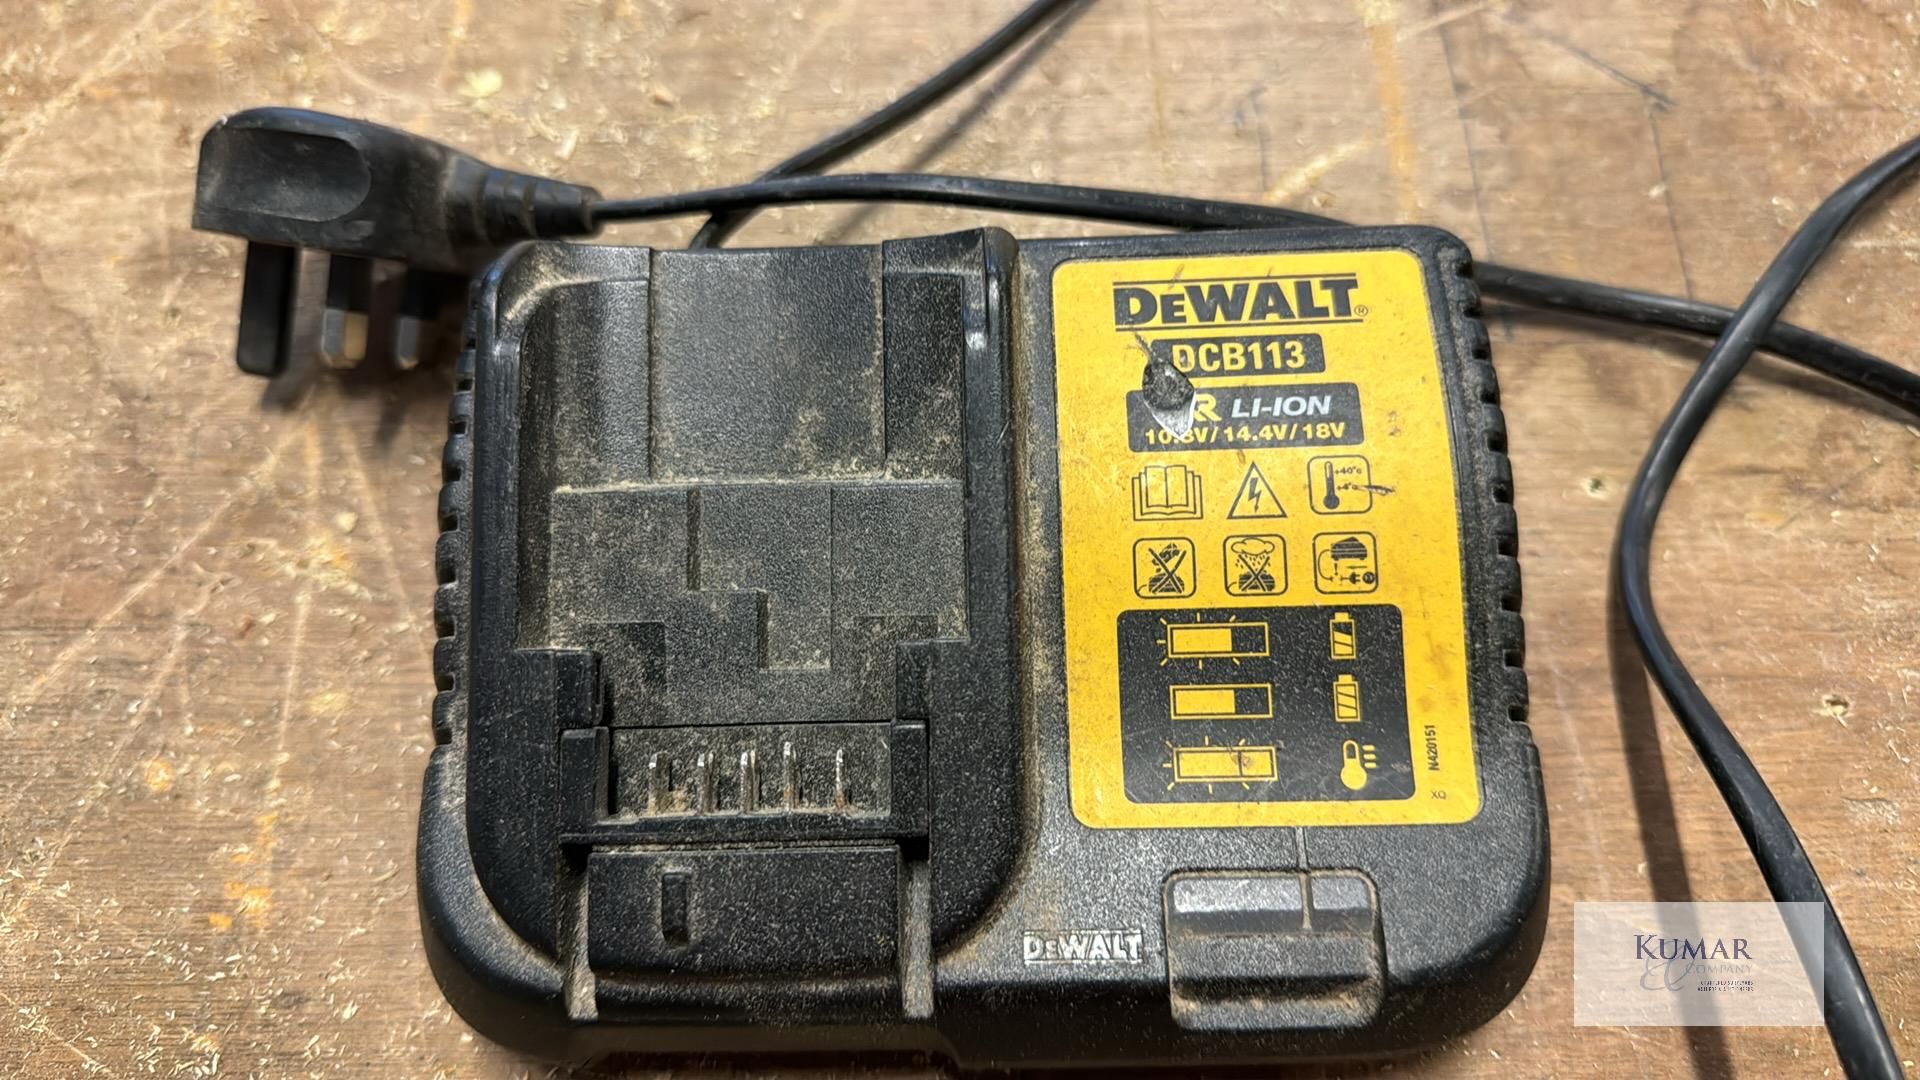 Lot of Dewalt Power Tools Comprising - DCG412 Angle Grinder, DCS355 Multi Tool with Dewalt XR 18v - Image 13 of 13